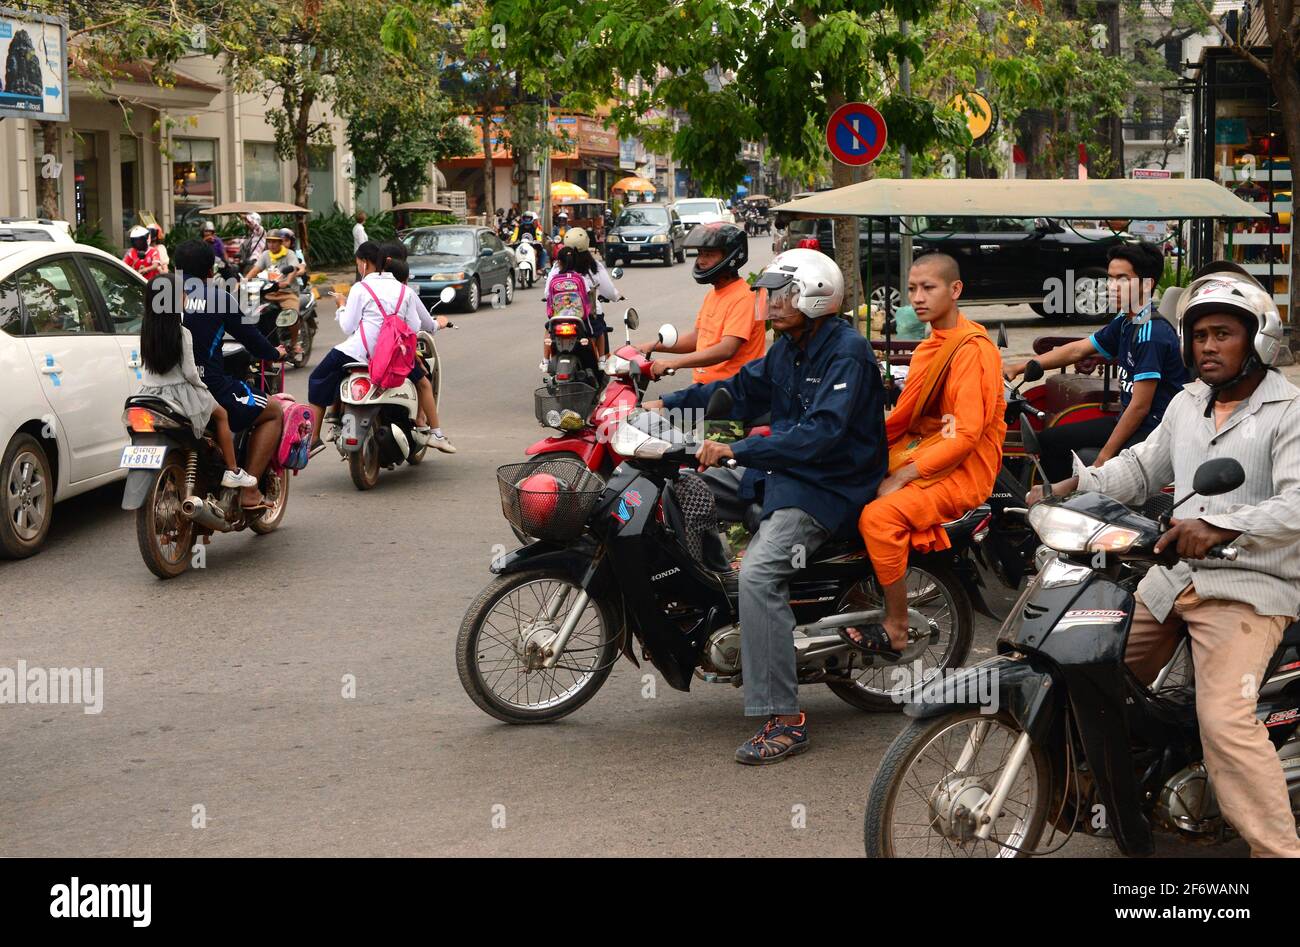 Ciudad de Siem Reap. Calle con coches, motocicletas y auto rickshaw o tuk-tuk. Camboya. Foto de stock